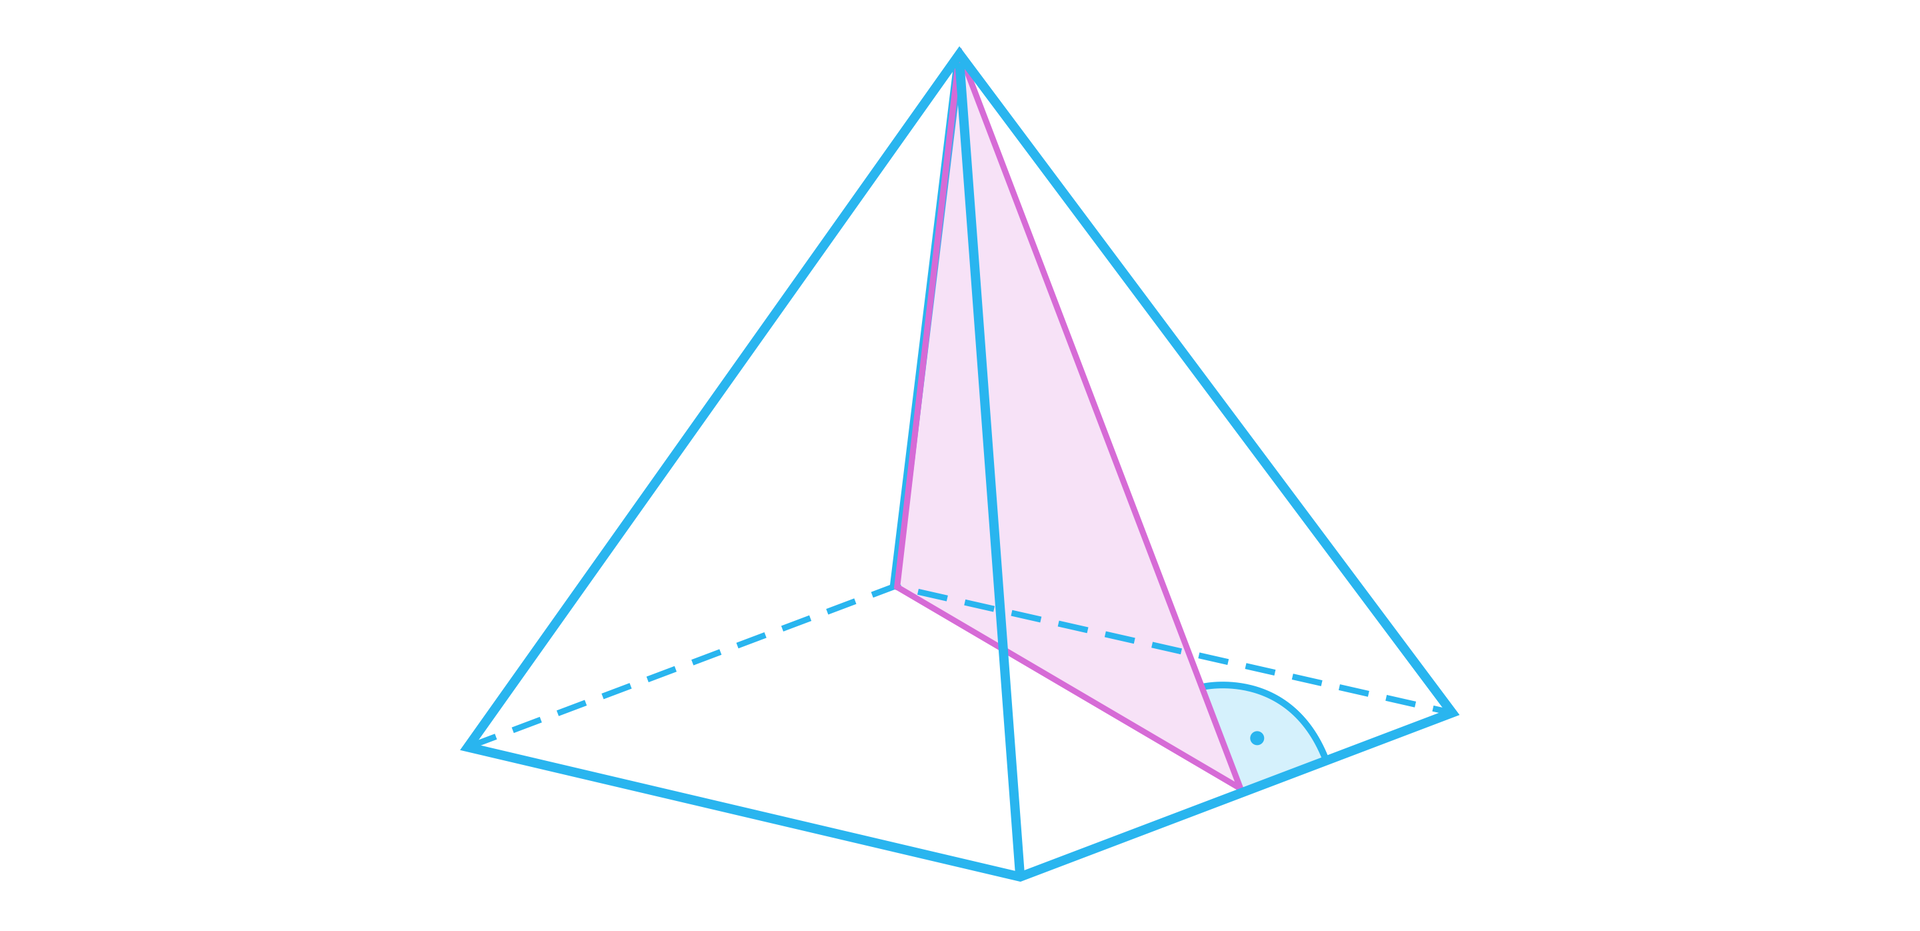 Na rysunku przedstawiono ostrosłup prawidłowy czworokątny z uwzględnionym przekrojem ukośnym, który jest trójkątem. Jeden z boków tego trójkąta pokrywa się  z jedną z krawędzi bocznych ostrosłupa. Drugi bok tego trójkąta pokrywa się z wysokością jednej z dwóch przeciwległych ścian. Podstawa tego trójkąta leży  na czworokącie będącym podstawą ostrosłupa.